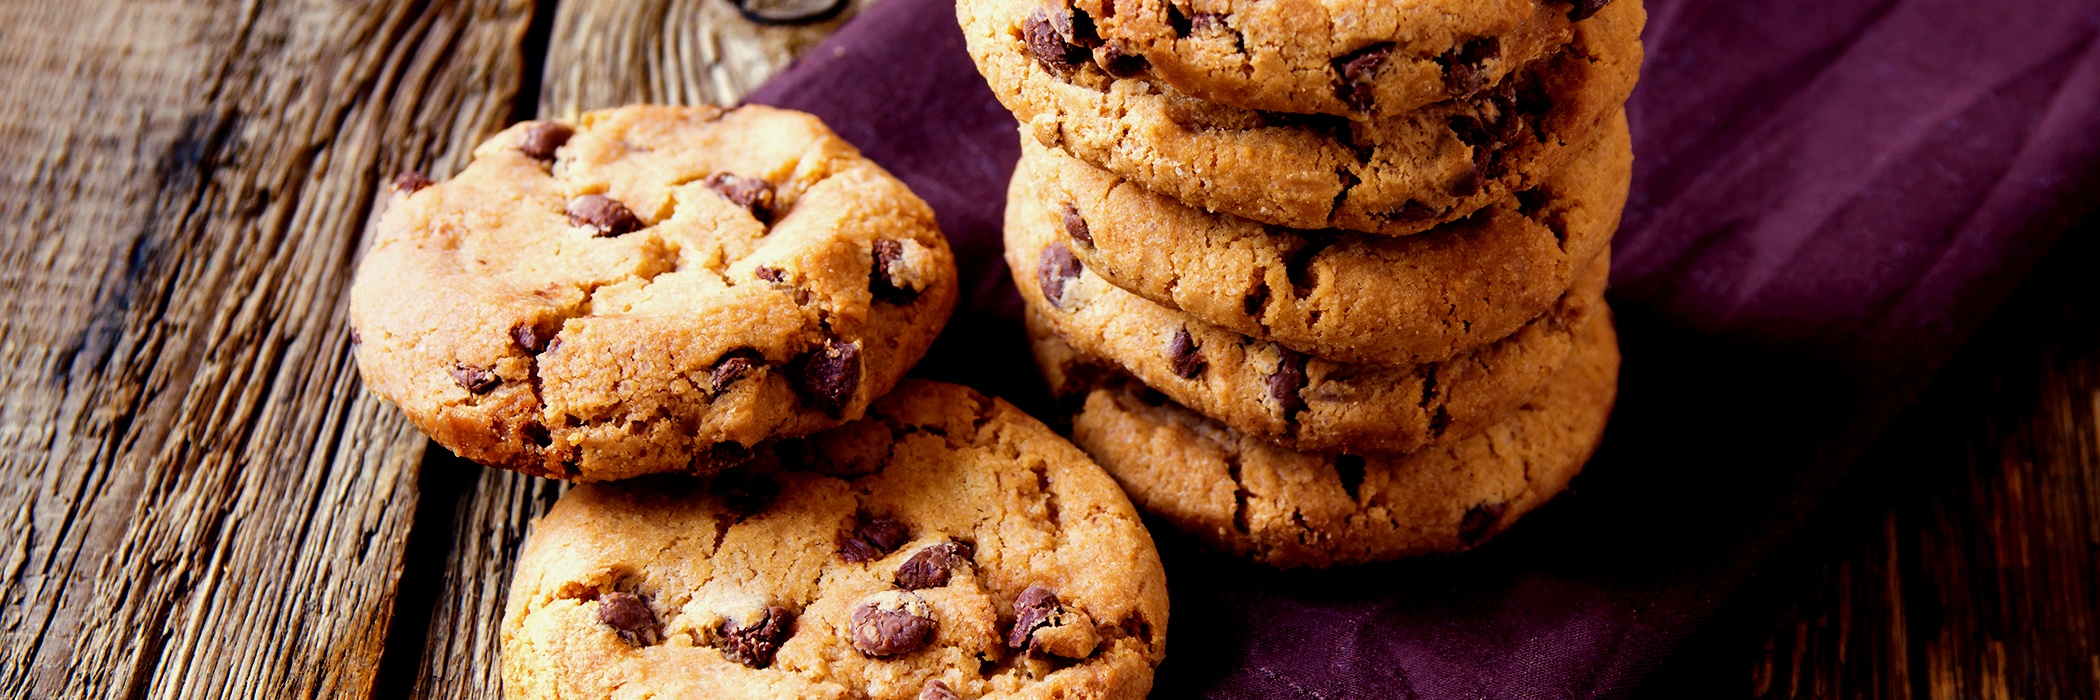 Cookies al cioccolato fatti in casa